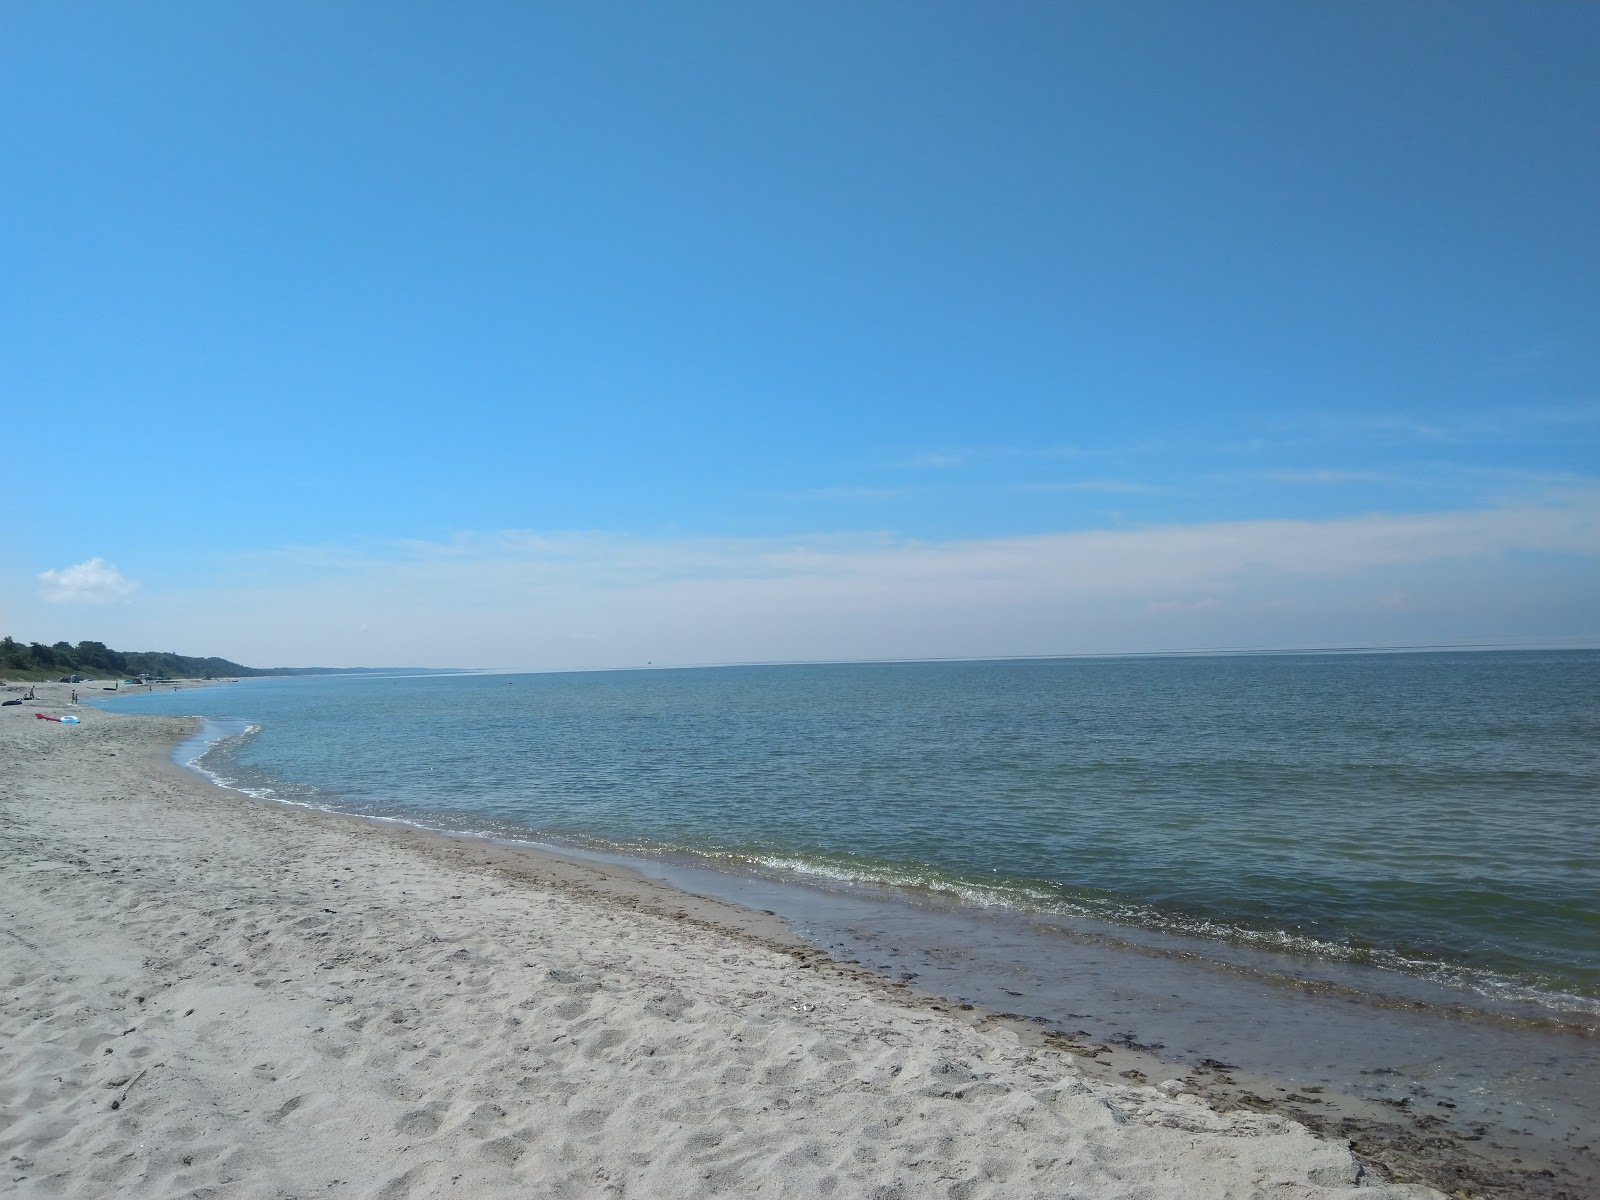 Fotografie cu Vitland beach - locul popular printre cunoscătorii de relaxare